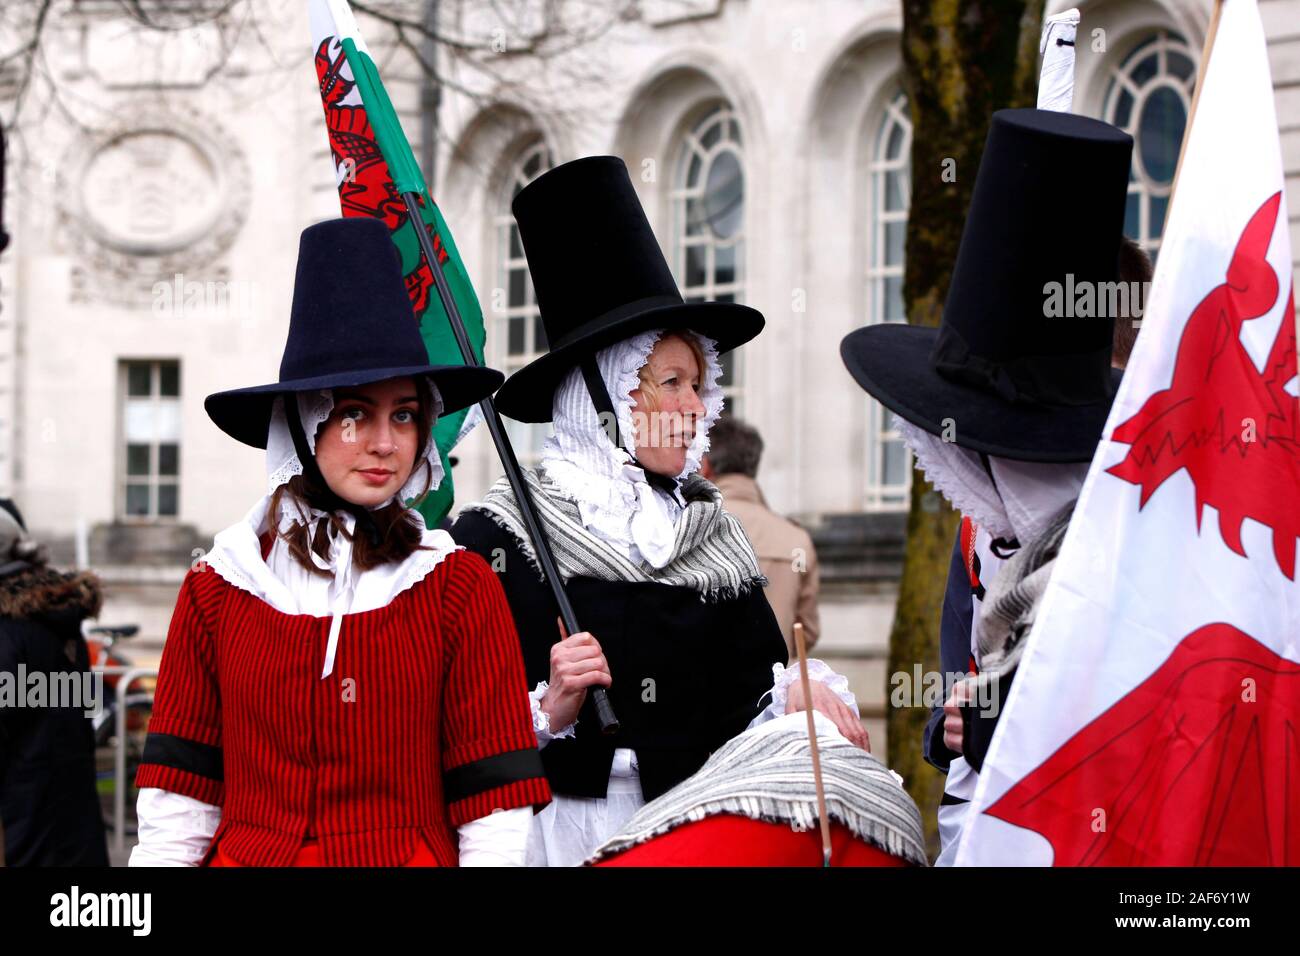 CARDIFF, VEREINIGTES KÖNIGREICH. 1. März 2019. Frauen gekleidet in traditionelle walisische Kleidung, wartet der St David Day Parade zu verbinden. Stockfoto